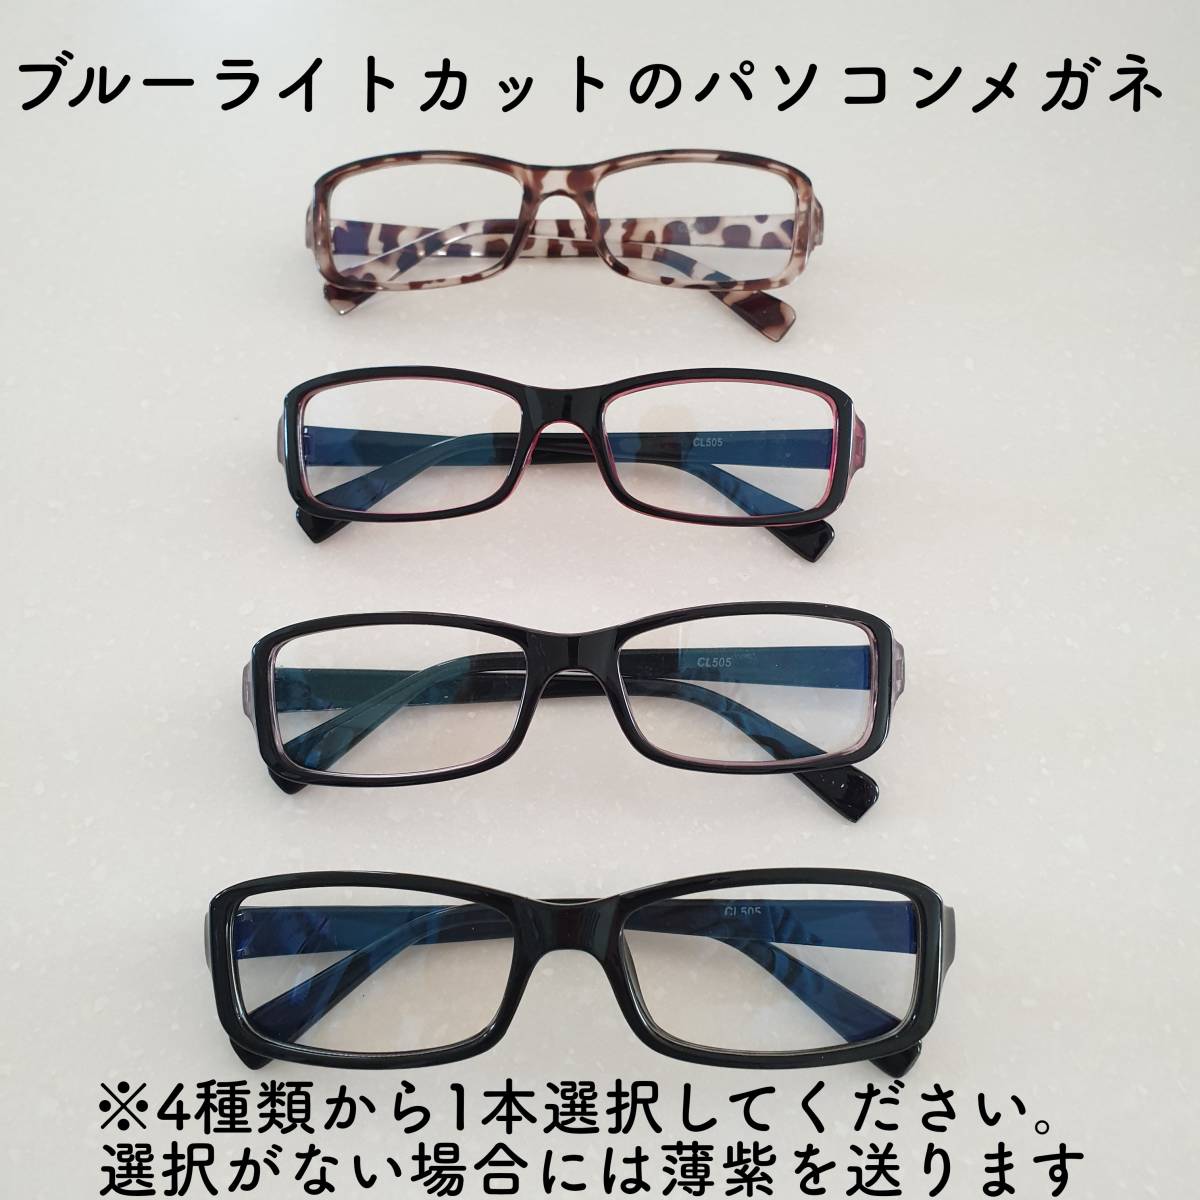 ブルーライトカットメガネ PC眼鏡 パソコン眼鏡 パソコンメガネ UVカットの画像1